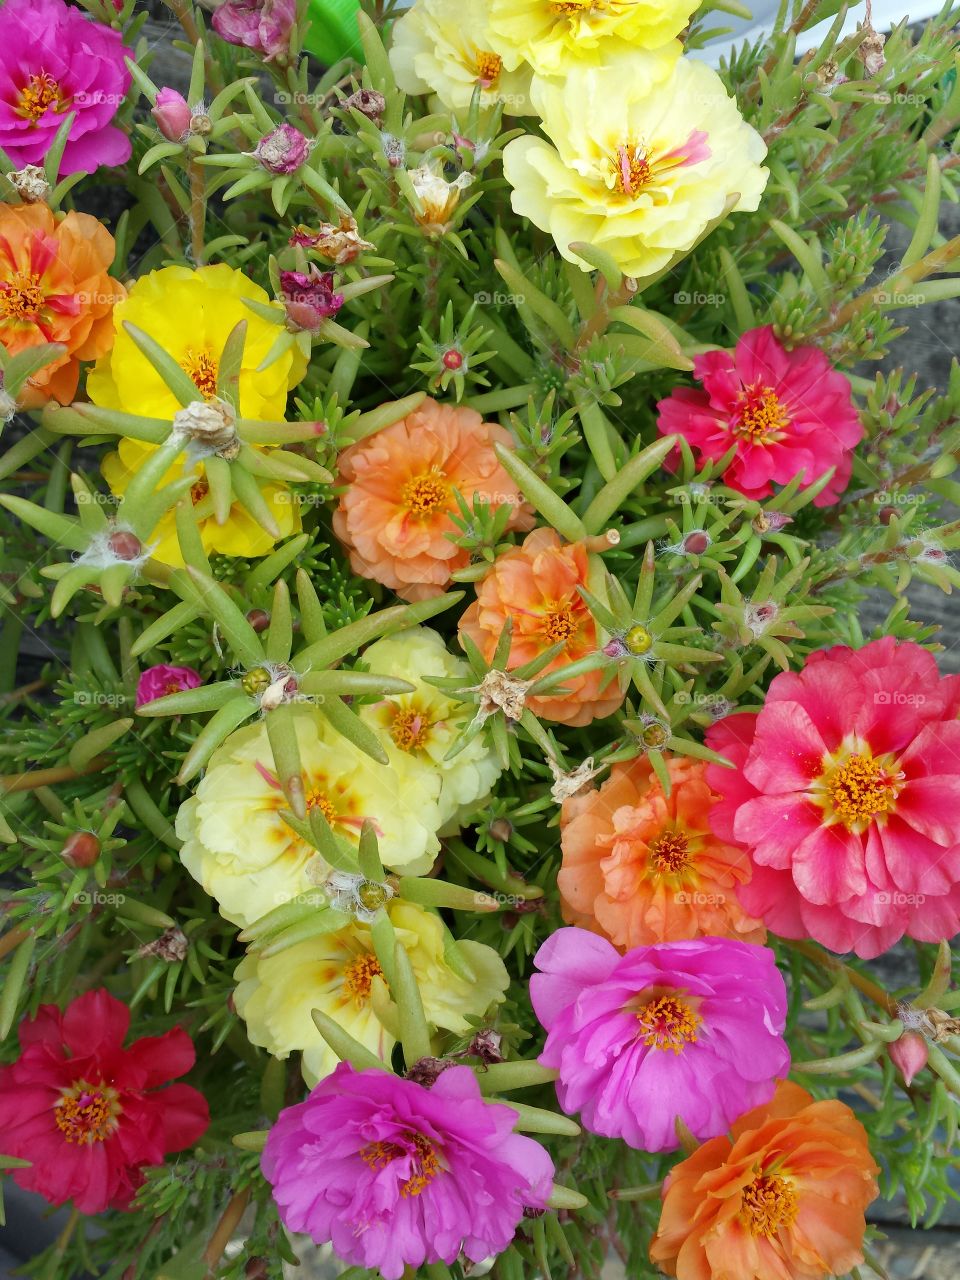 Portulaca. Colorful close up of a Portulaca in bloom.